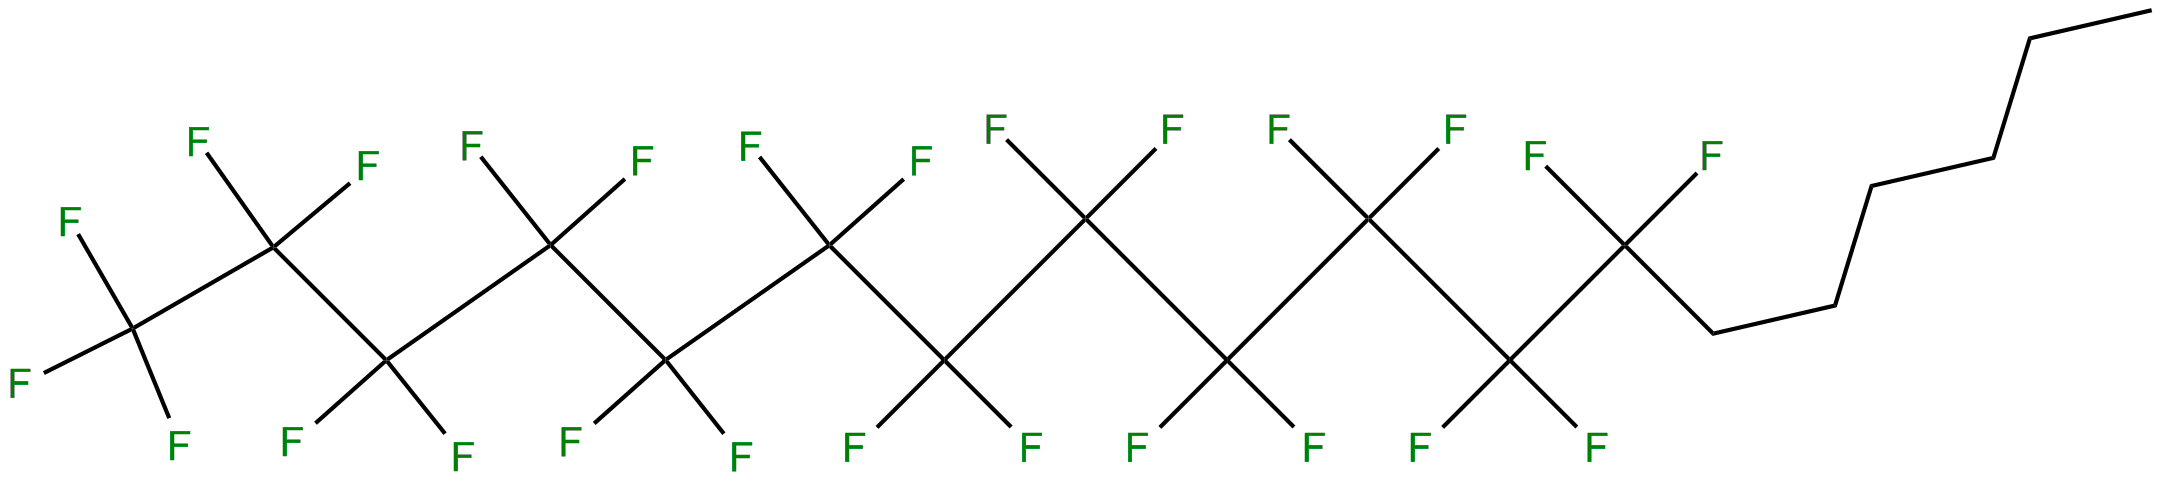 Image of 1,1,1,2,2,3,3,4,4,5,5,6,6,7,7,8,8,9,9,10,10,11,11,12,12-pentacosafluorooctadecane